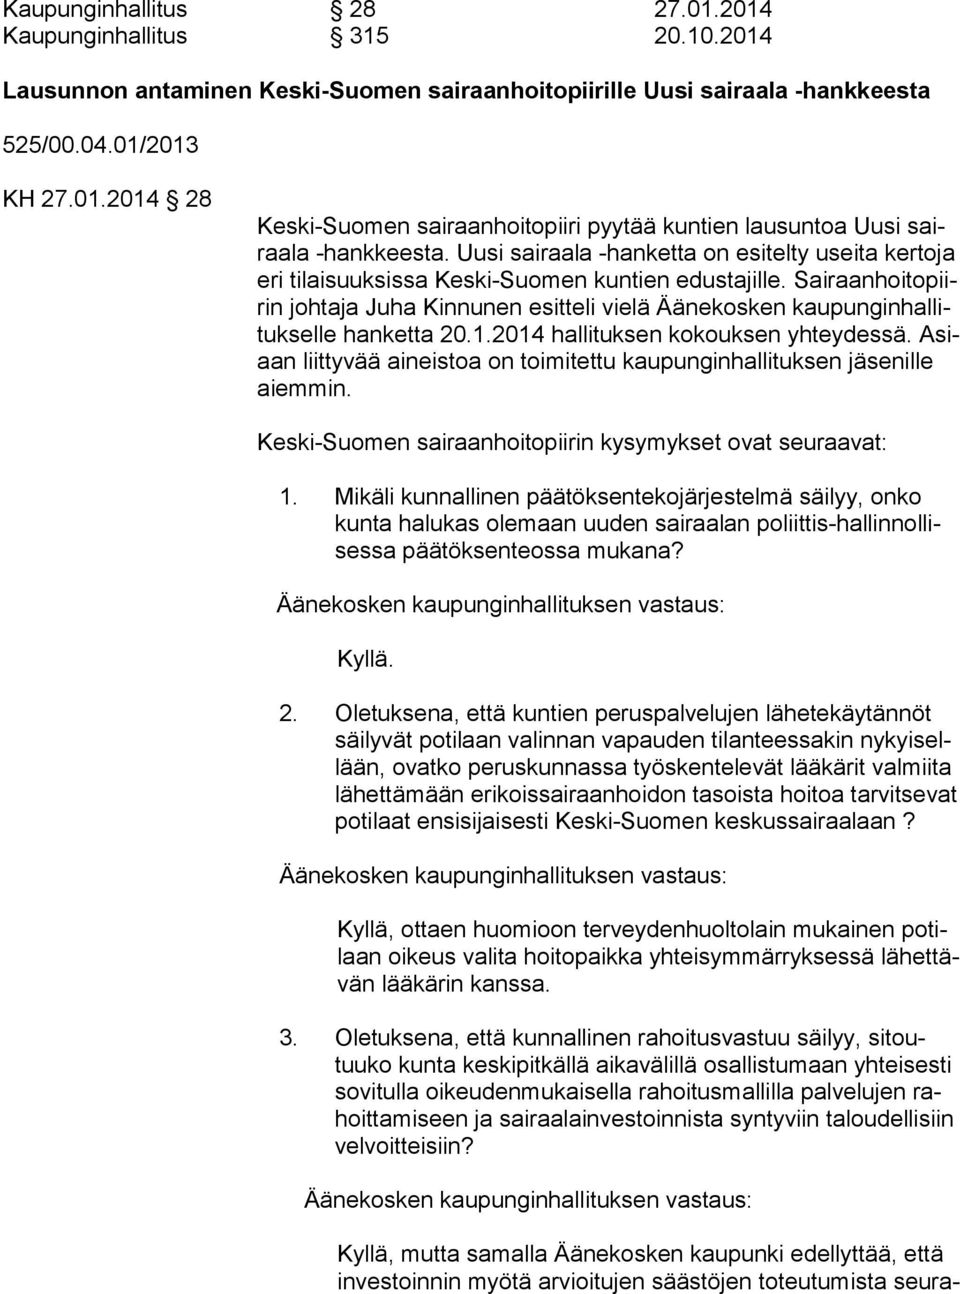 Sairaanhoito piirin johtaja Juha Kinnunen esitteli vielä Äänekosken kaupunginhal litukselle hanketta 20.1.2014 hallituksen kokouksen yhteydessä.